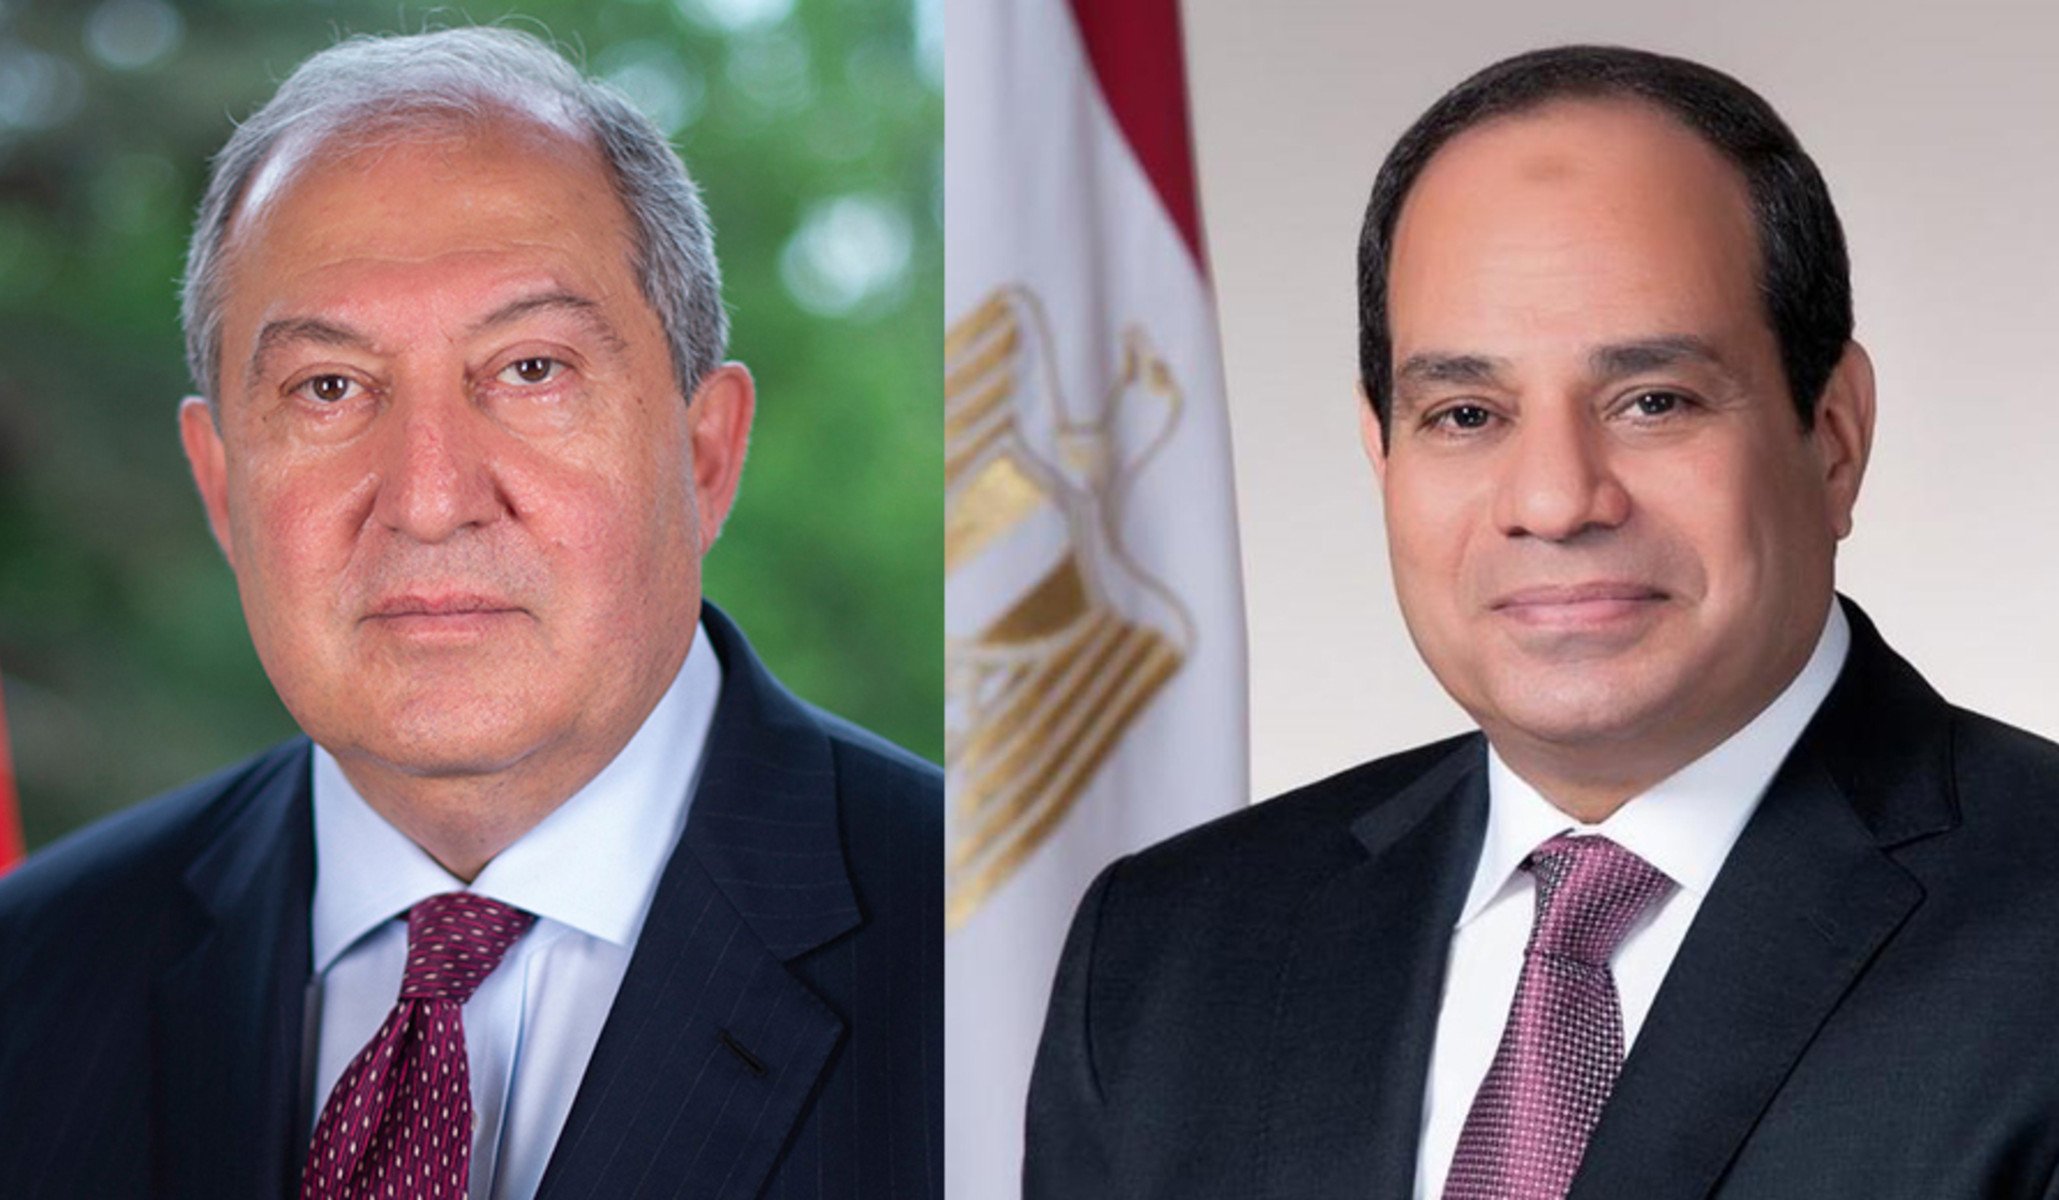 Լիահույս եմ, որ մեր բարեկամության ավանդական կապերը կշարունակեն ամրապնդվել.​ Եգիպտոսի նախագահը Անկախության օրվա առթիվ շնորհավորել է Արմեն Սարգսյանին